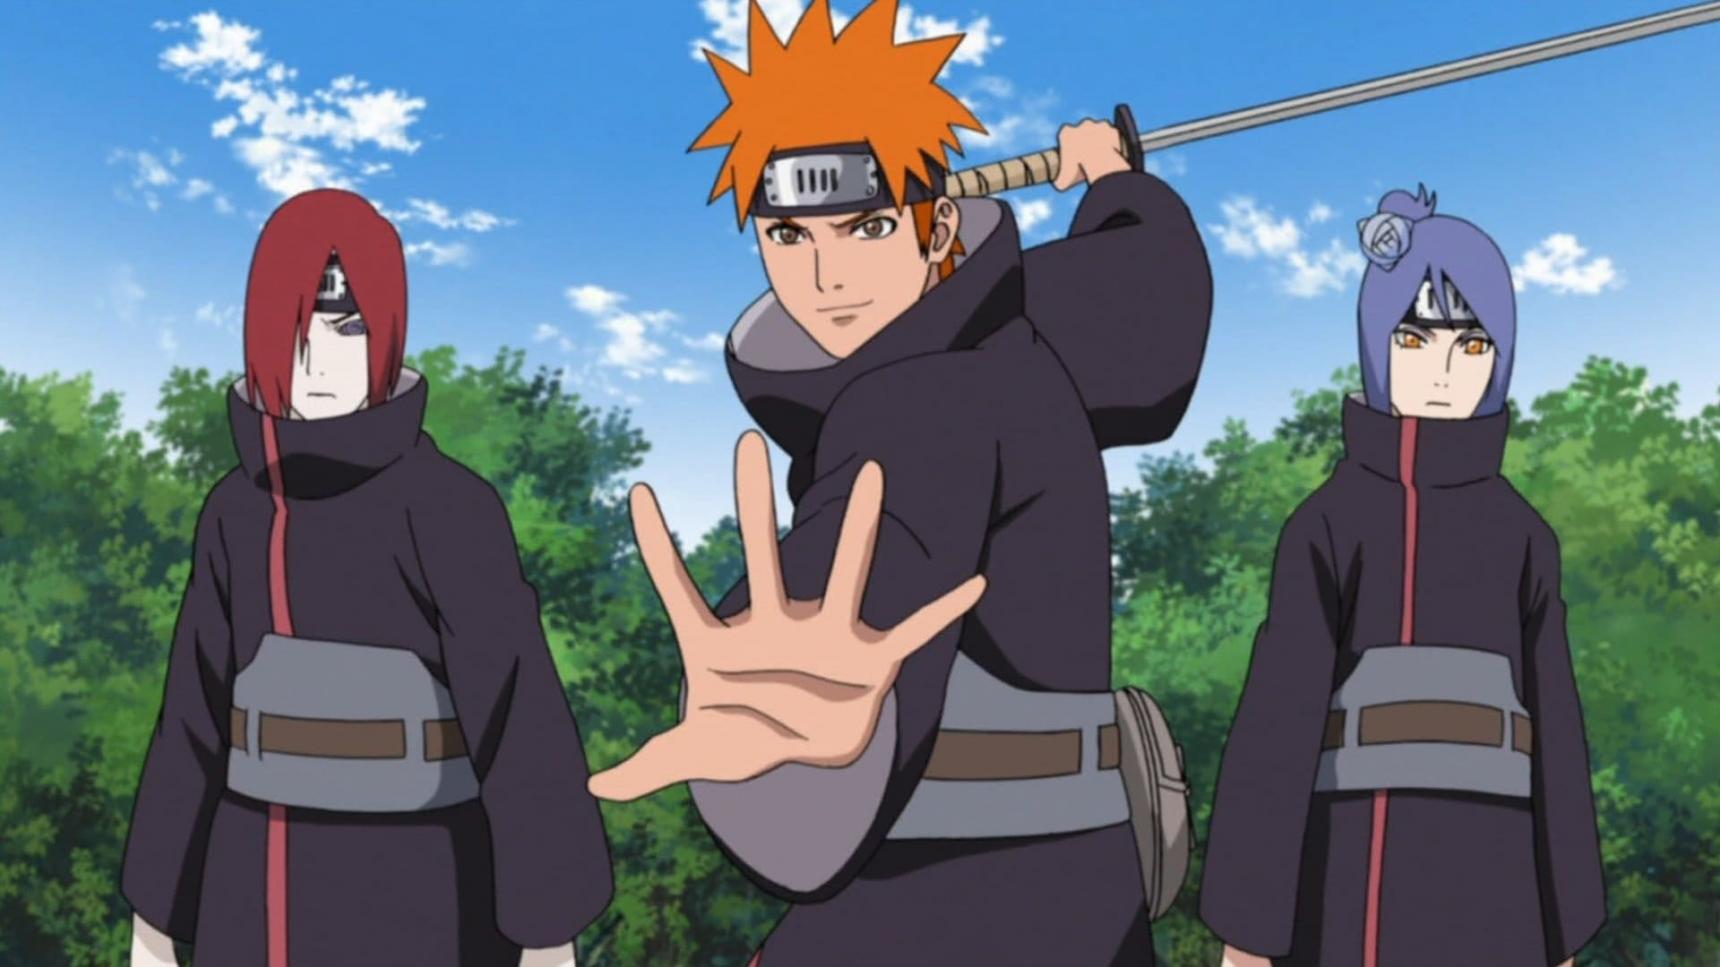 Poster del episodio 434 de Naruto Shippuden online